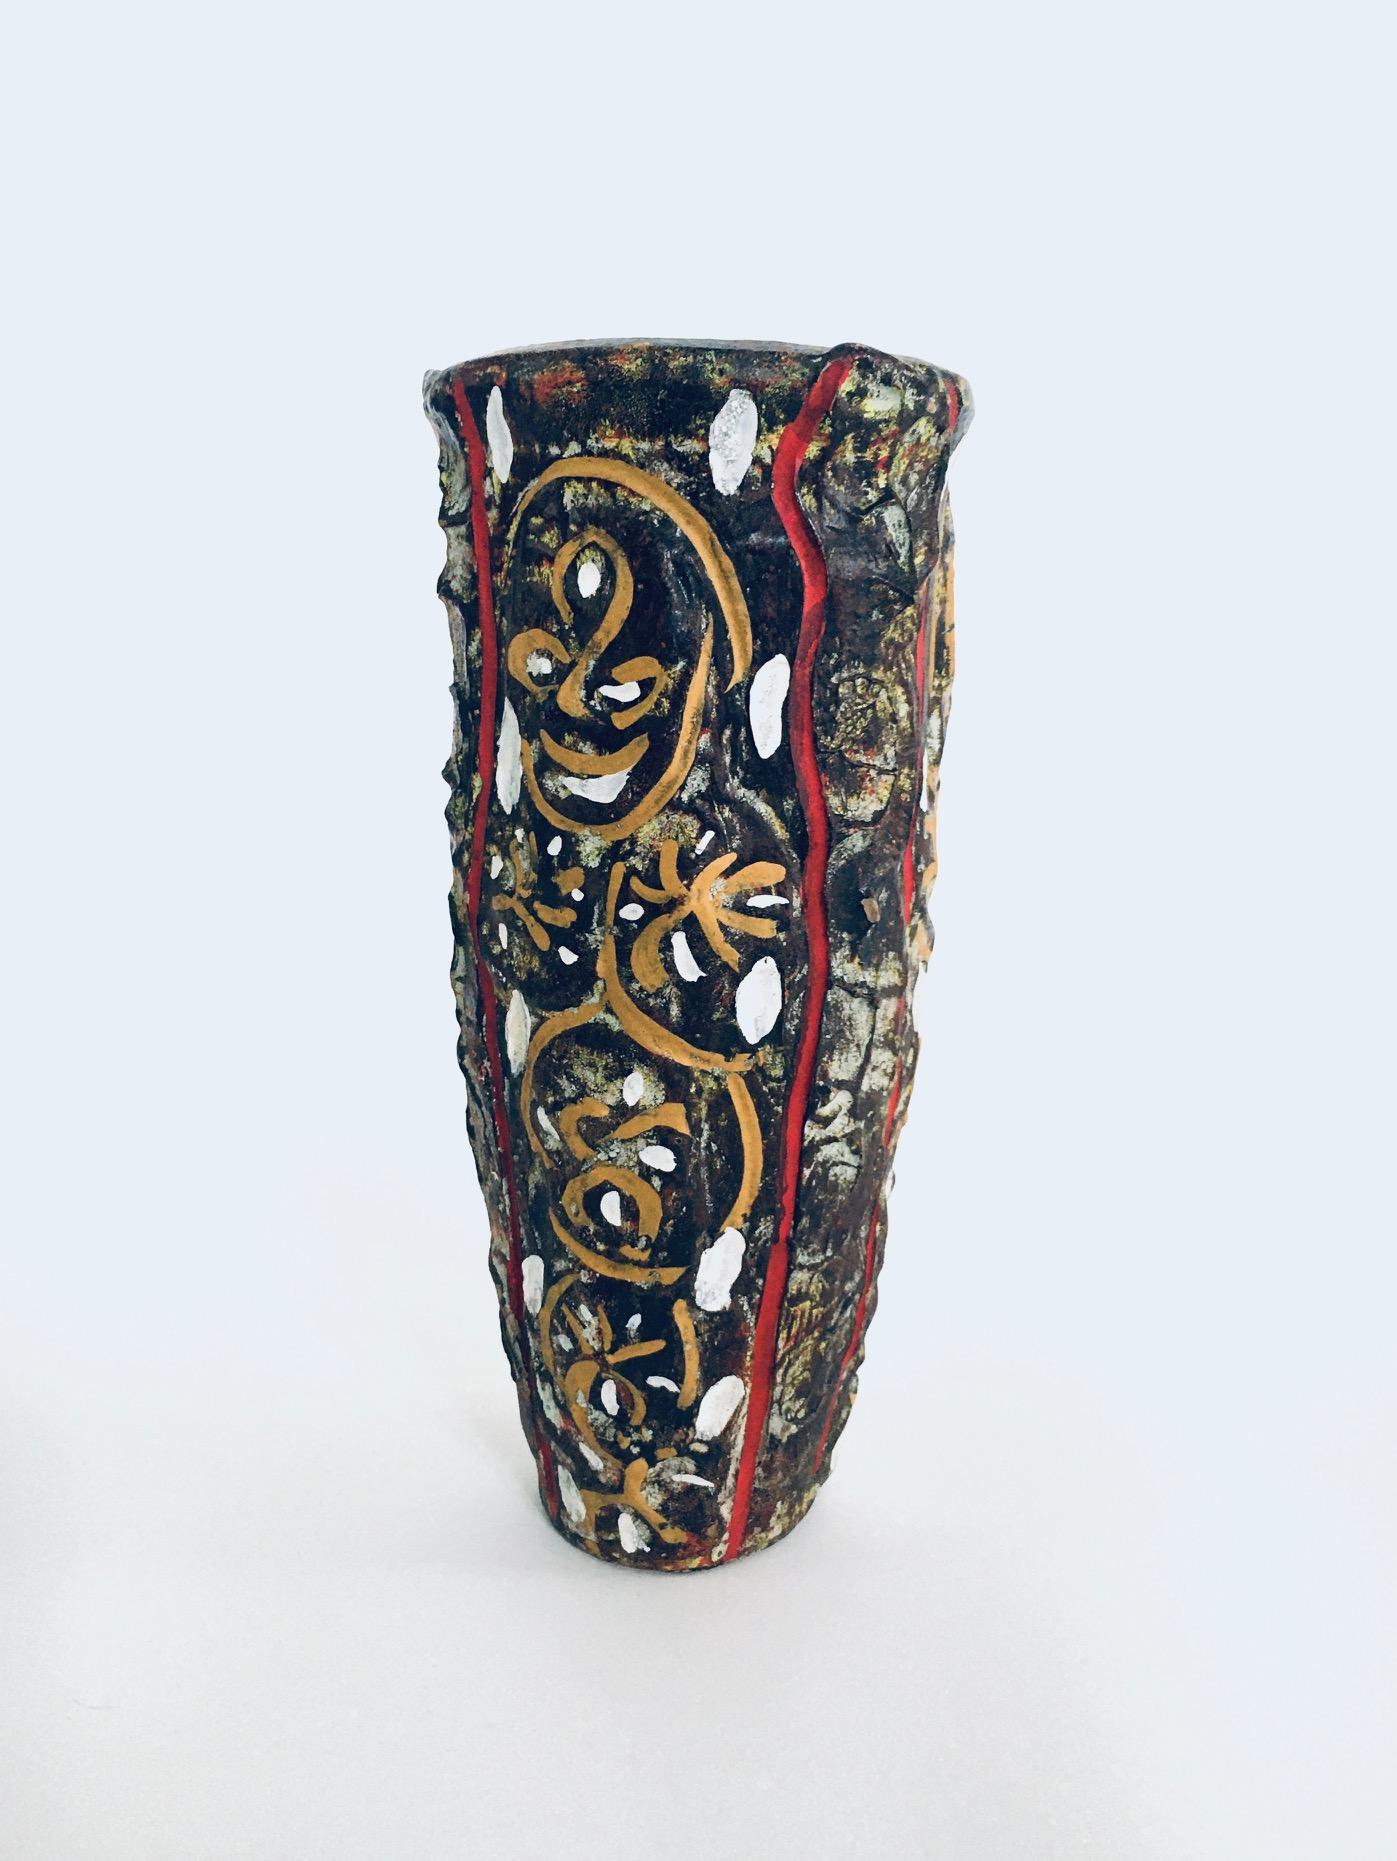 Vintage RARE Brutalist Design Art Pottery Studio Painted Vase. Fabriqué en Belgique, période des années 1960. Ce vase ne porte aucune marque de l'artiste. Vase peint multicolore de forme brutale qui rappelle la culture de l'art africain. Ce vase est